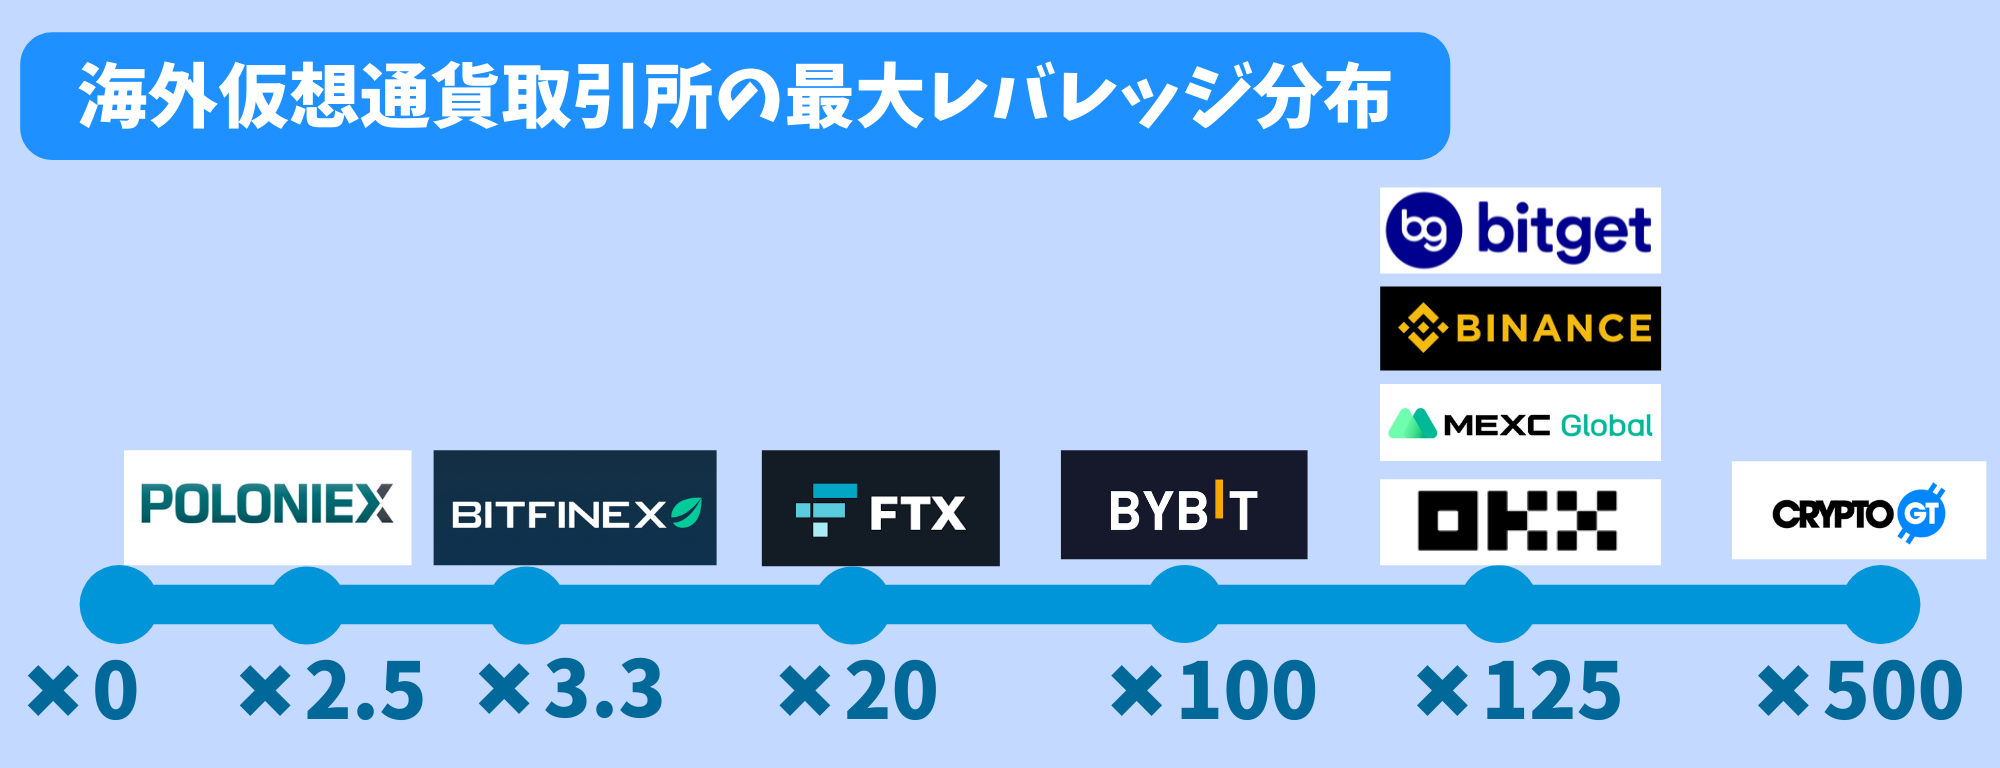 Bybitのレバレッジを他社と比較